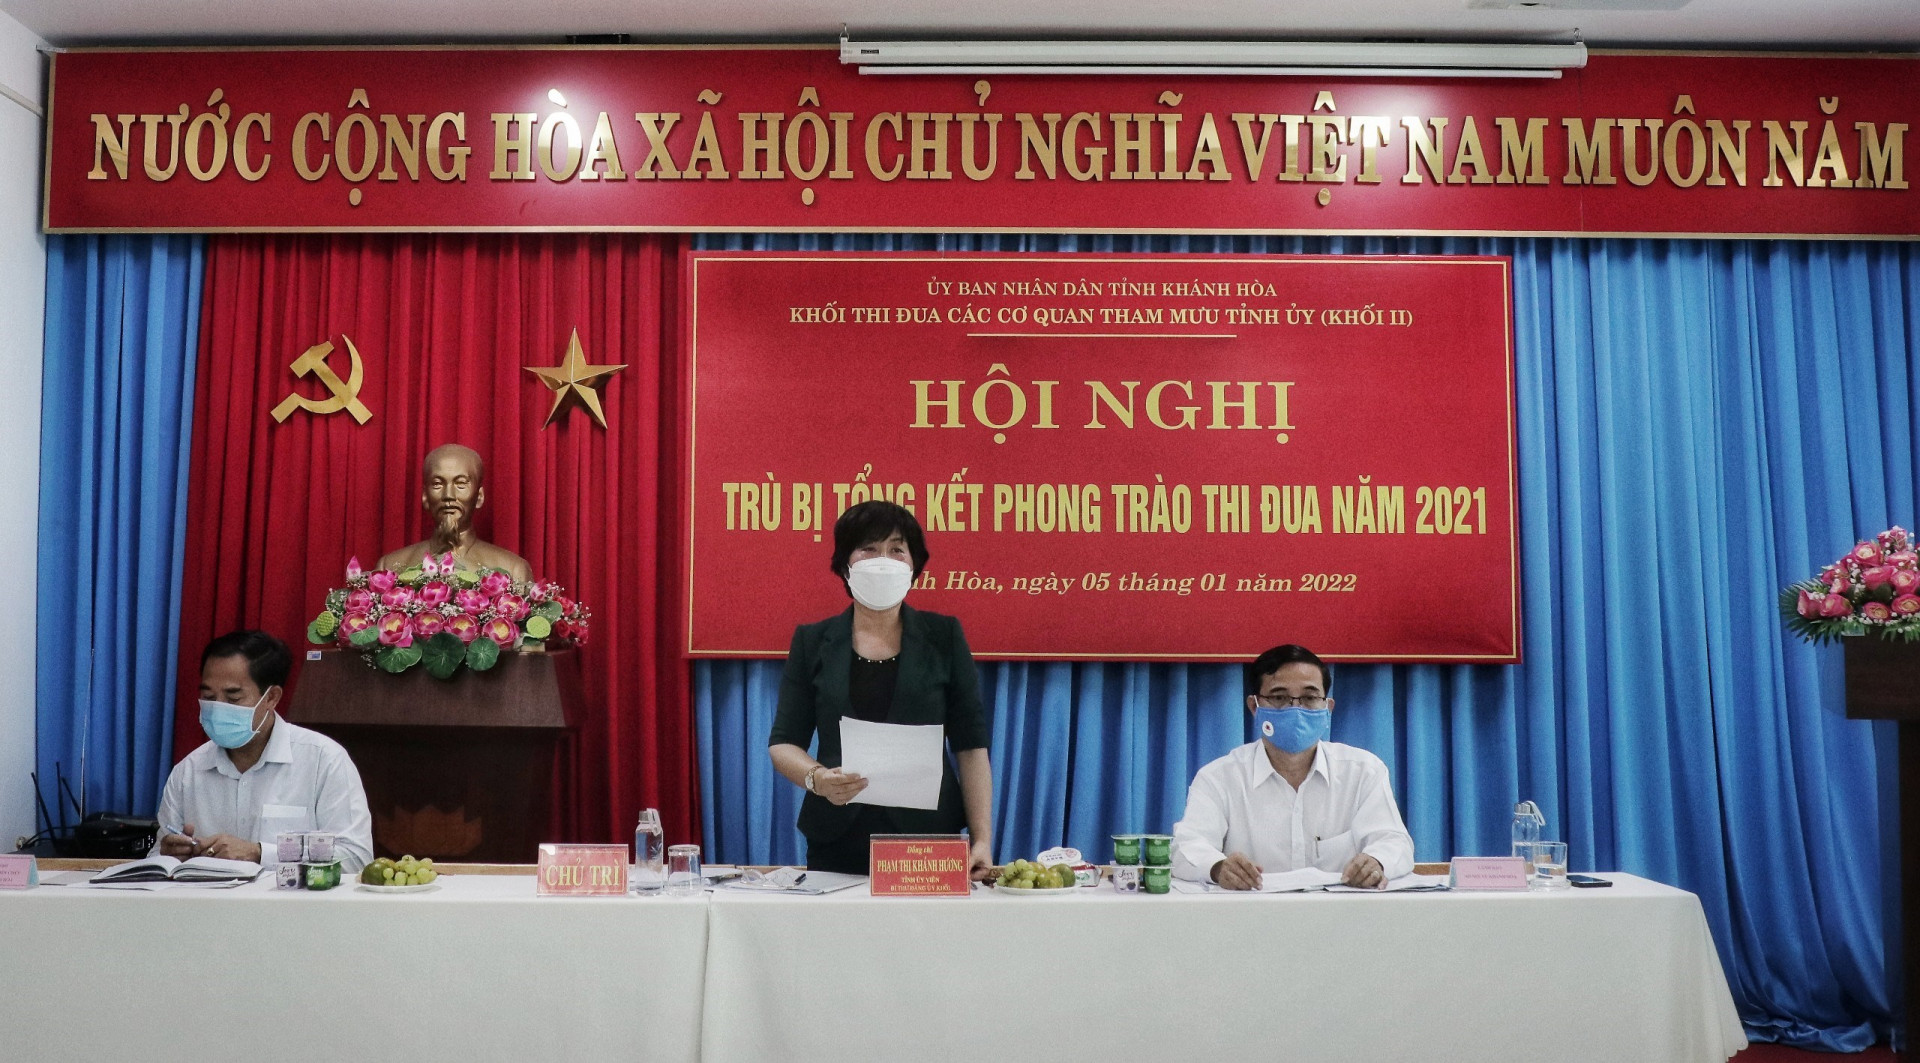 Bà Phạm Thị Khánh Hương - Tỉnh ủy viên, Bí thư Đảng bộ Khối các cơ quan tỉnh phát biểu tại Hội nghị